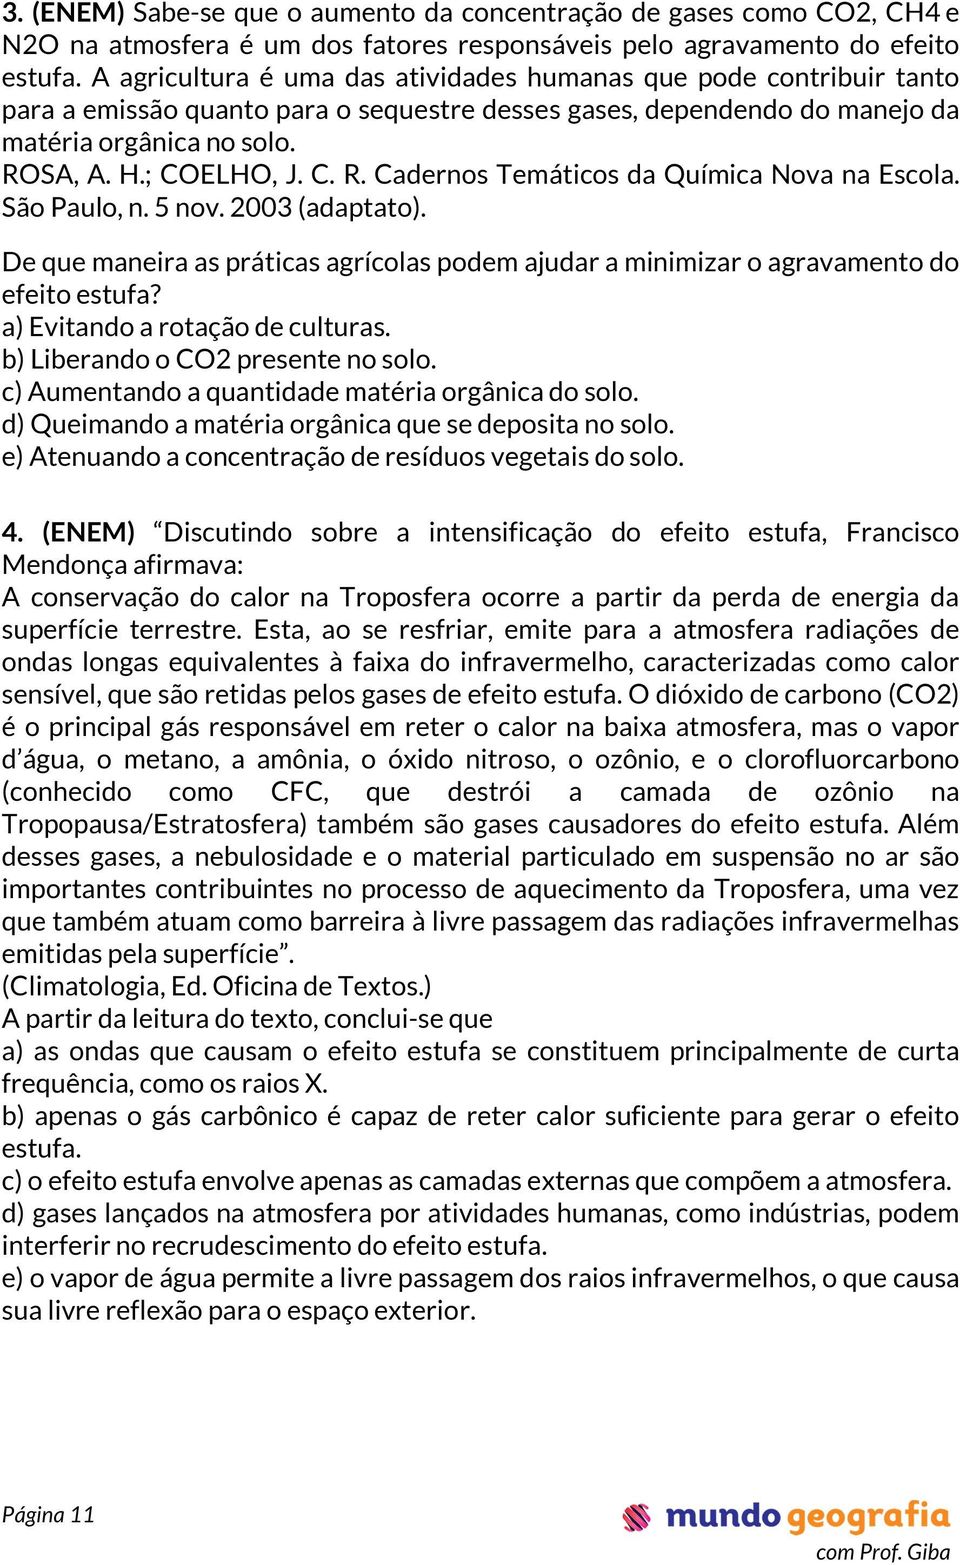 SA, A. H.; COELHO, J. C. R. Cadernos Temáticos da Química Nova na Escola. São Paulo, n. 5 nov. 2003 (adaptato).